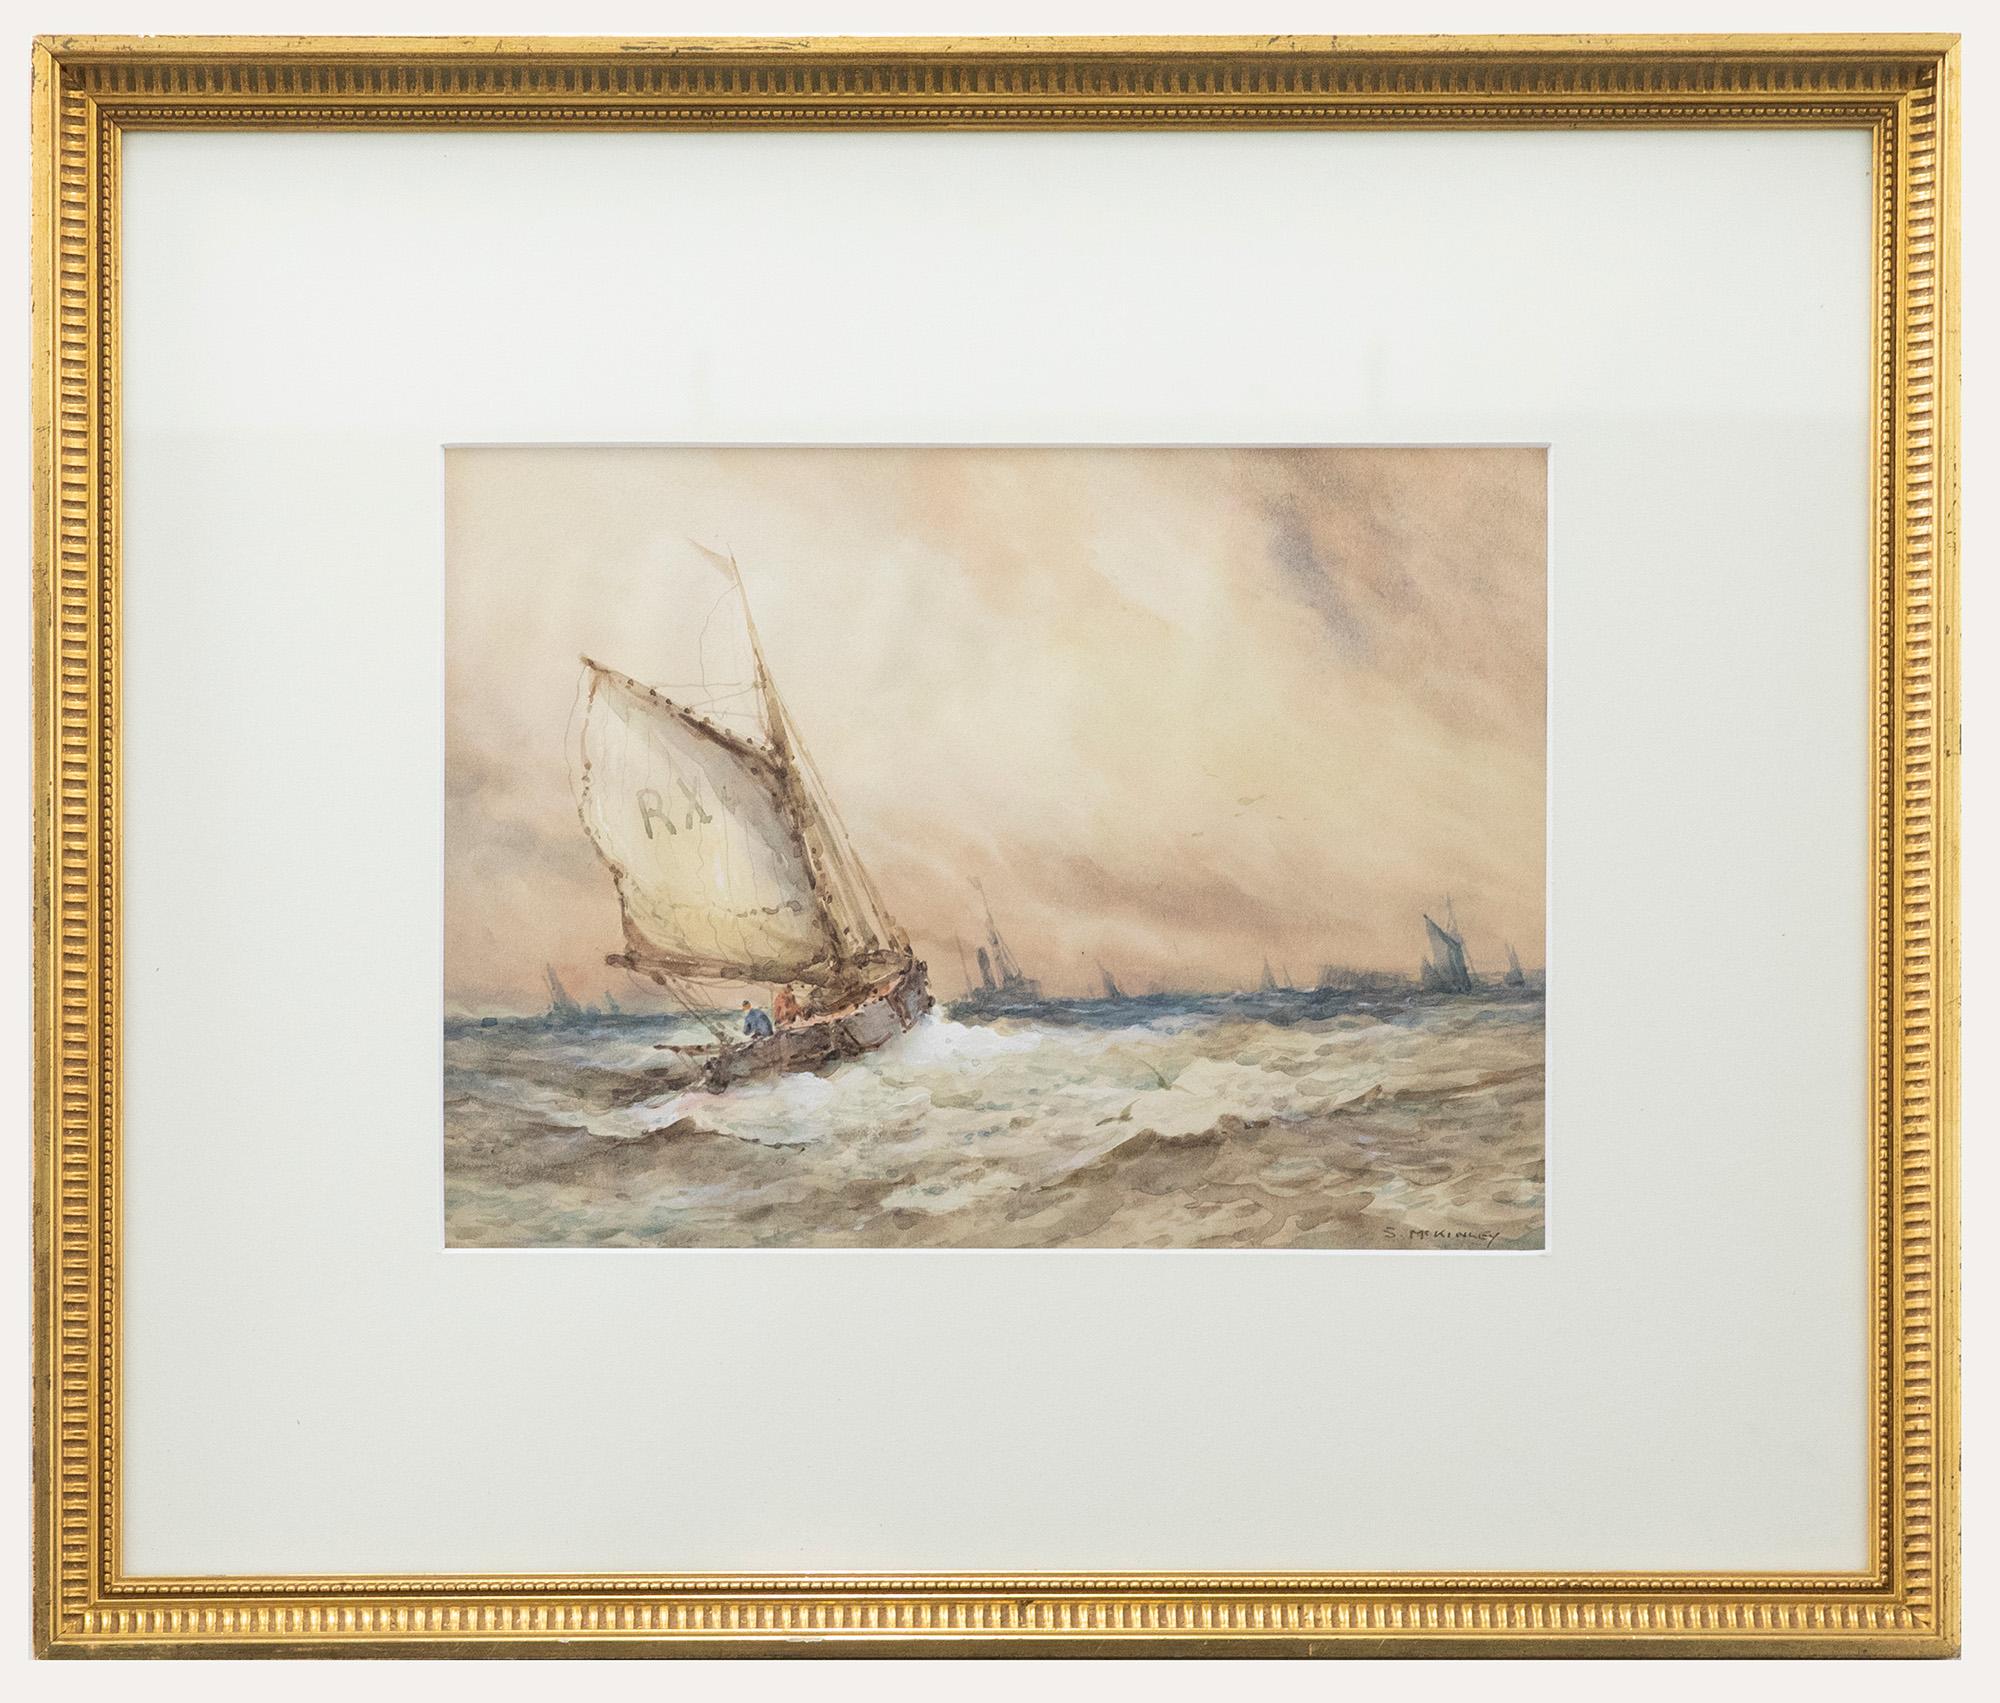 Figurative Art Unknown - S. McKinley (né en 1920) - Aquarelle encadrée du milieu du 20e siècle, vagues de mer chevauchant